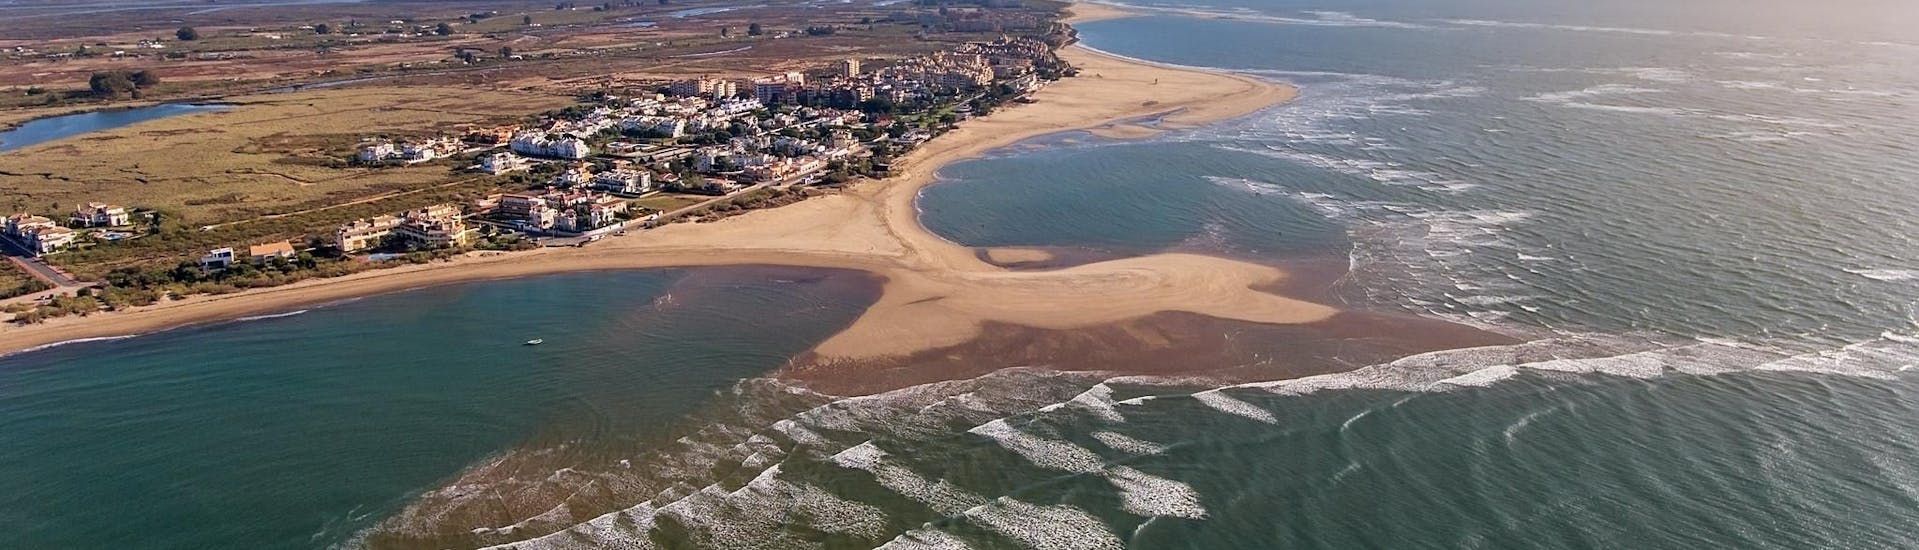 Vista aérea de Isla Canela, un lugar maravilloso de Huelva que puedes descubrir con una moto acuática.